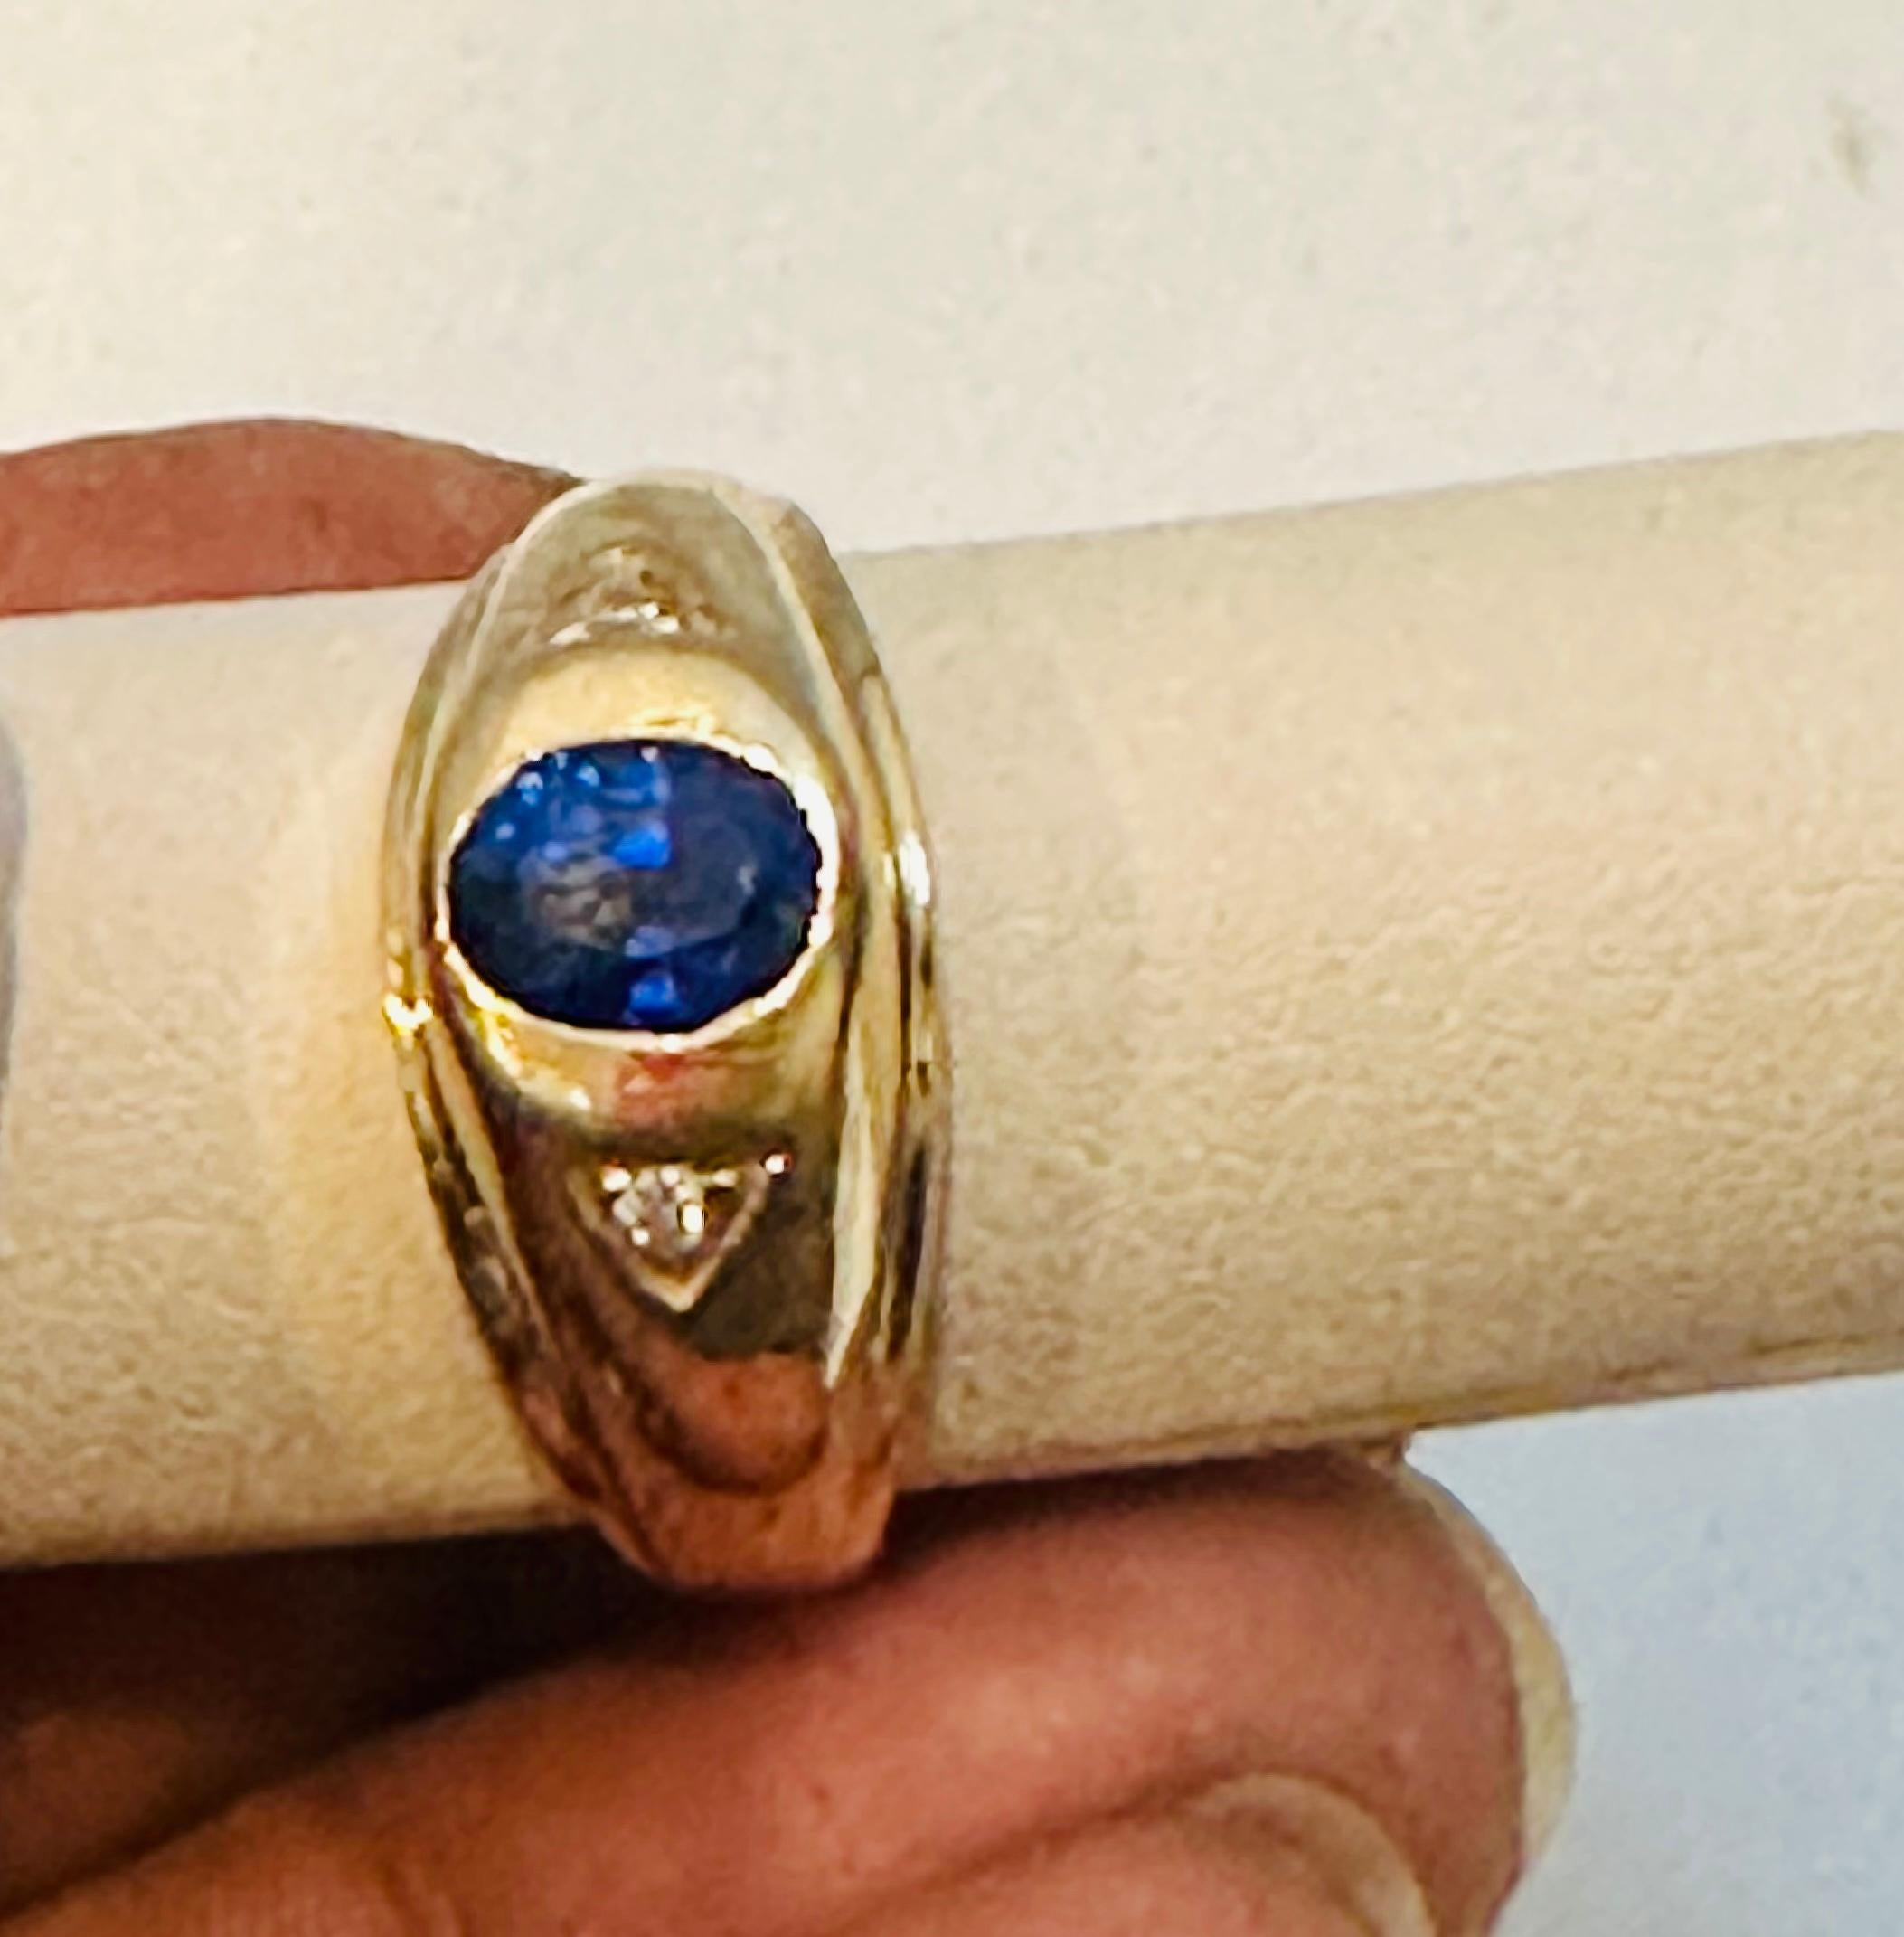 Oval Natürlich  Verlobungsring mit blauem Saphir und Diamant aus 18 Karat Gelbgold
Ungefähr 1 1/4 Karat Oval Blau  Ceylon Saphir 
18 Karat Gelbgold 6,57 Gramm
Ring Größe 10.5 (kann auf jede Größe kostenlos geändert werden)
Natürlicher Saphir von